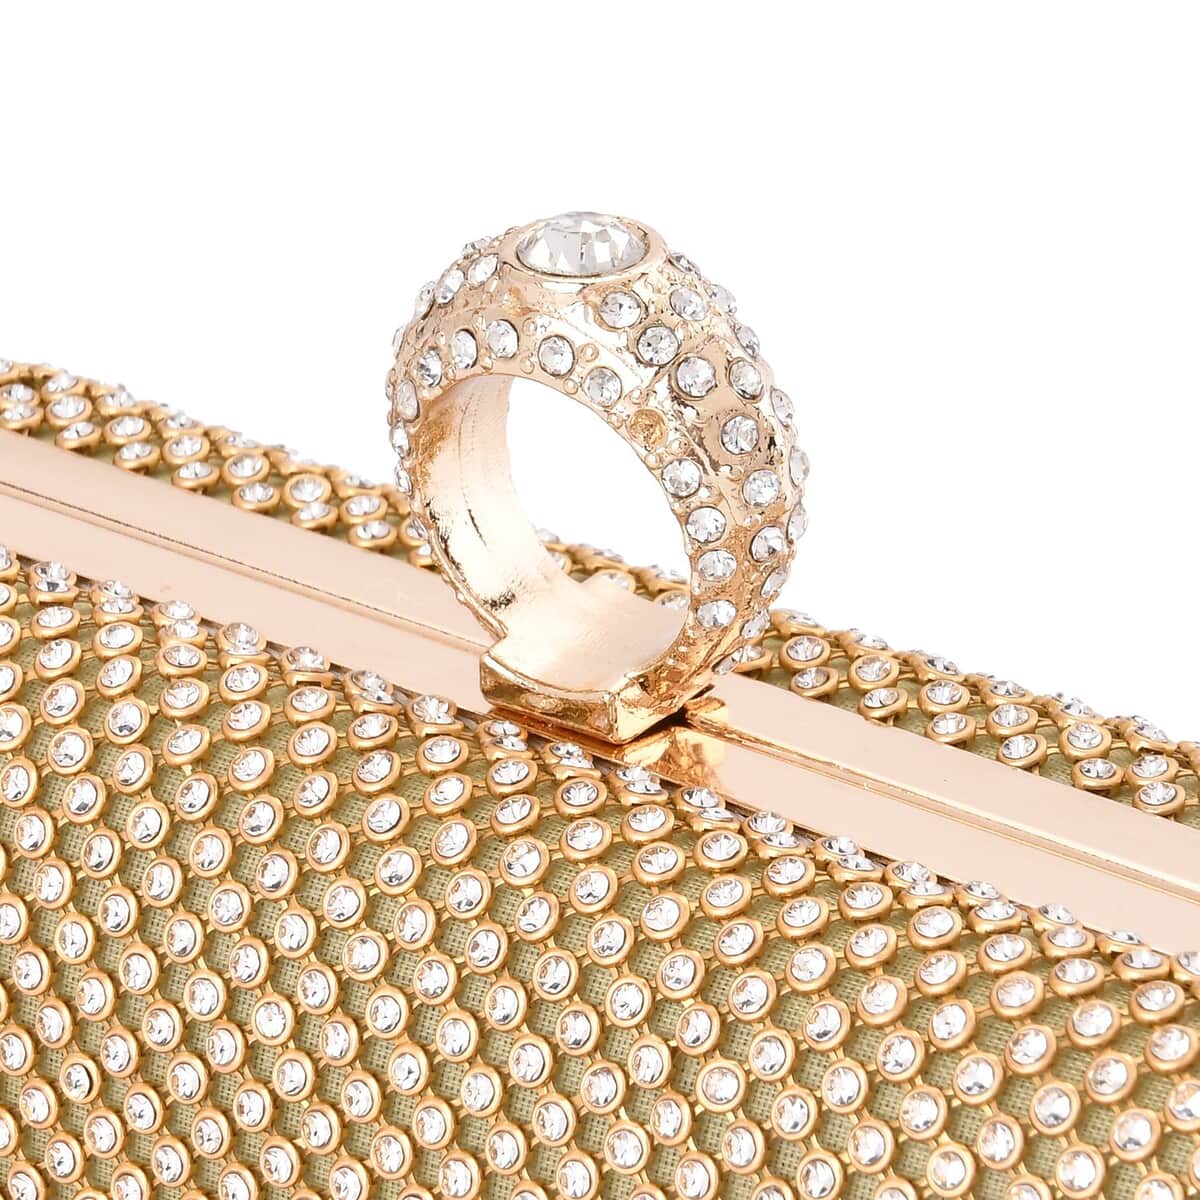 Gold Color Sparkling Crystal Clutch Bag with Shoulder Strap image number 5